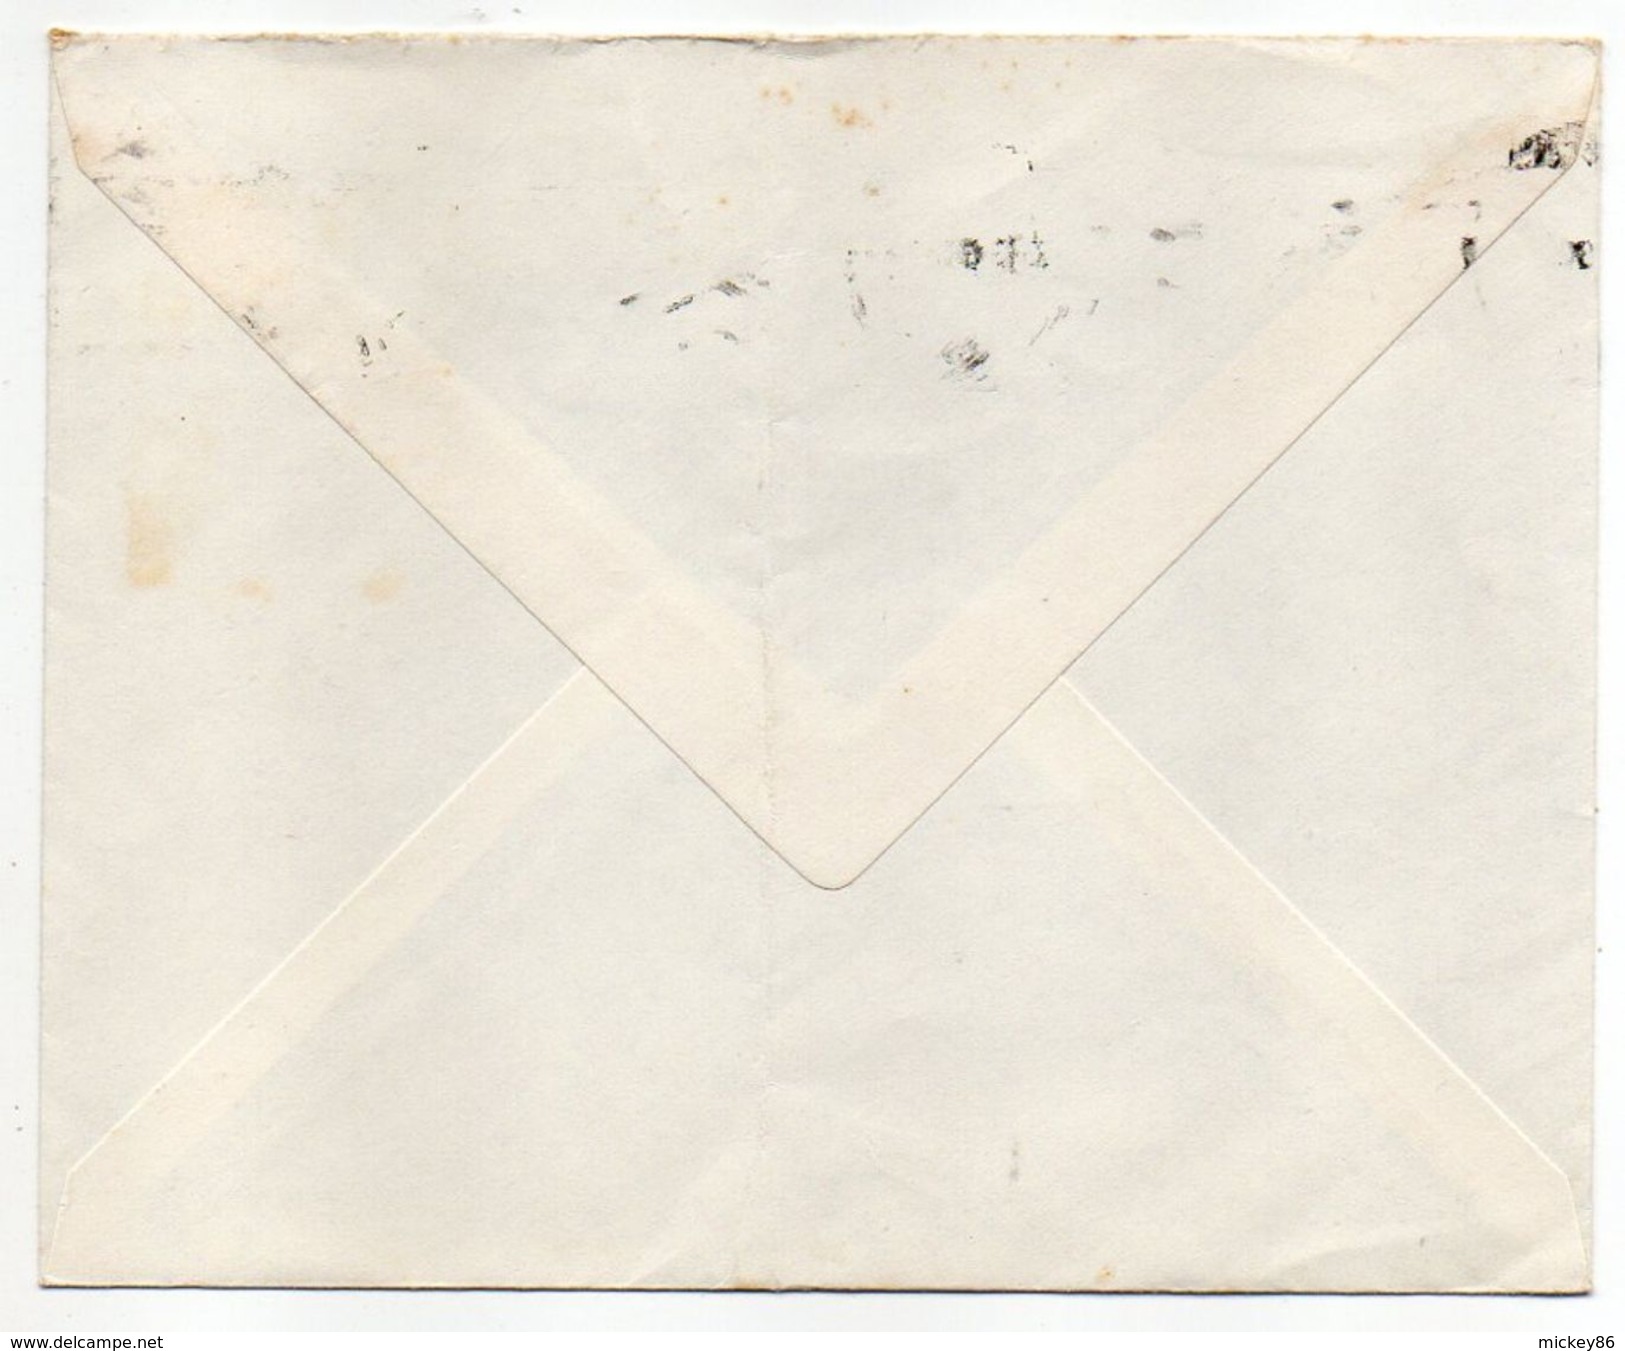 Tunisie--1960--lettre De TUNIS  Pour  Neuilly Sur Seine-92 (France)--timbre Seul Sur Lettre--cachet - Tunesien (1956-...)